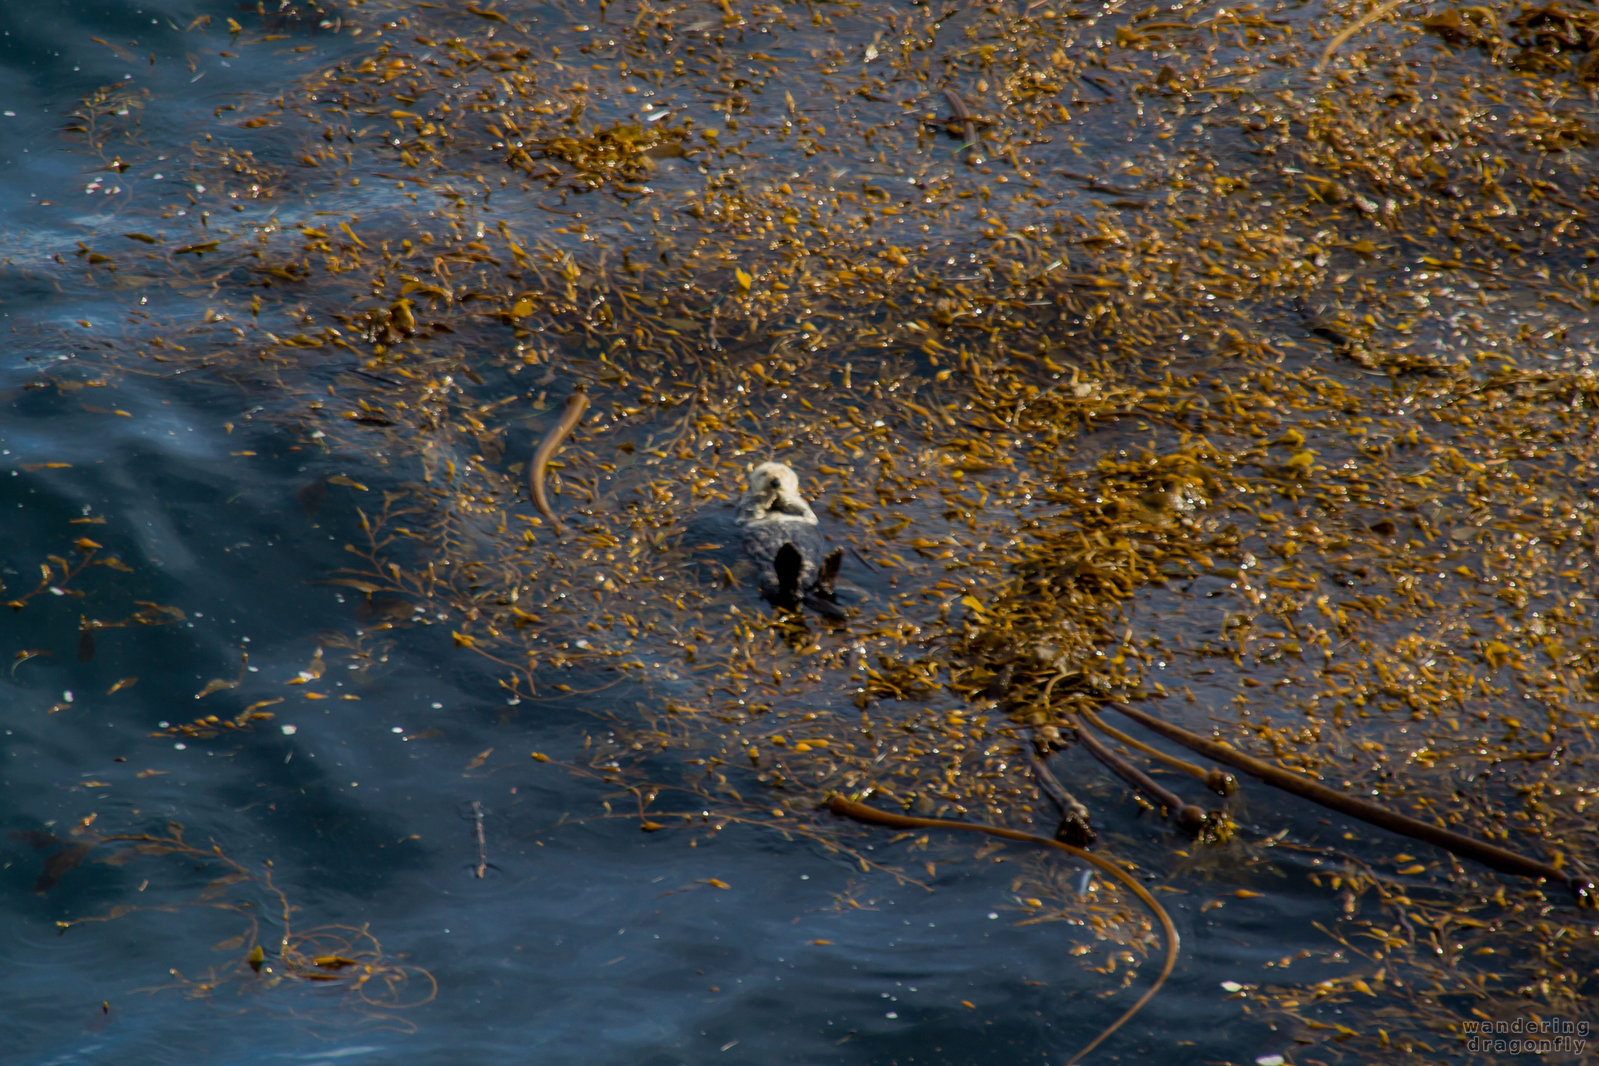 Southern Sea Otter in the floating brown seaweed -- kelp, ocean, sea otter, seaweed, water